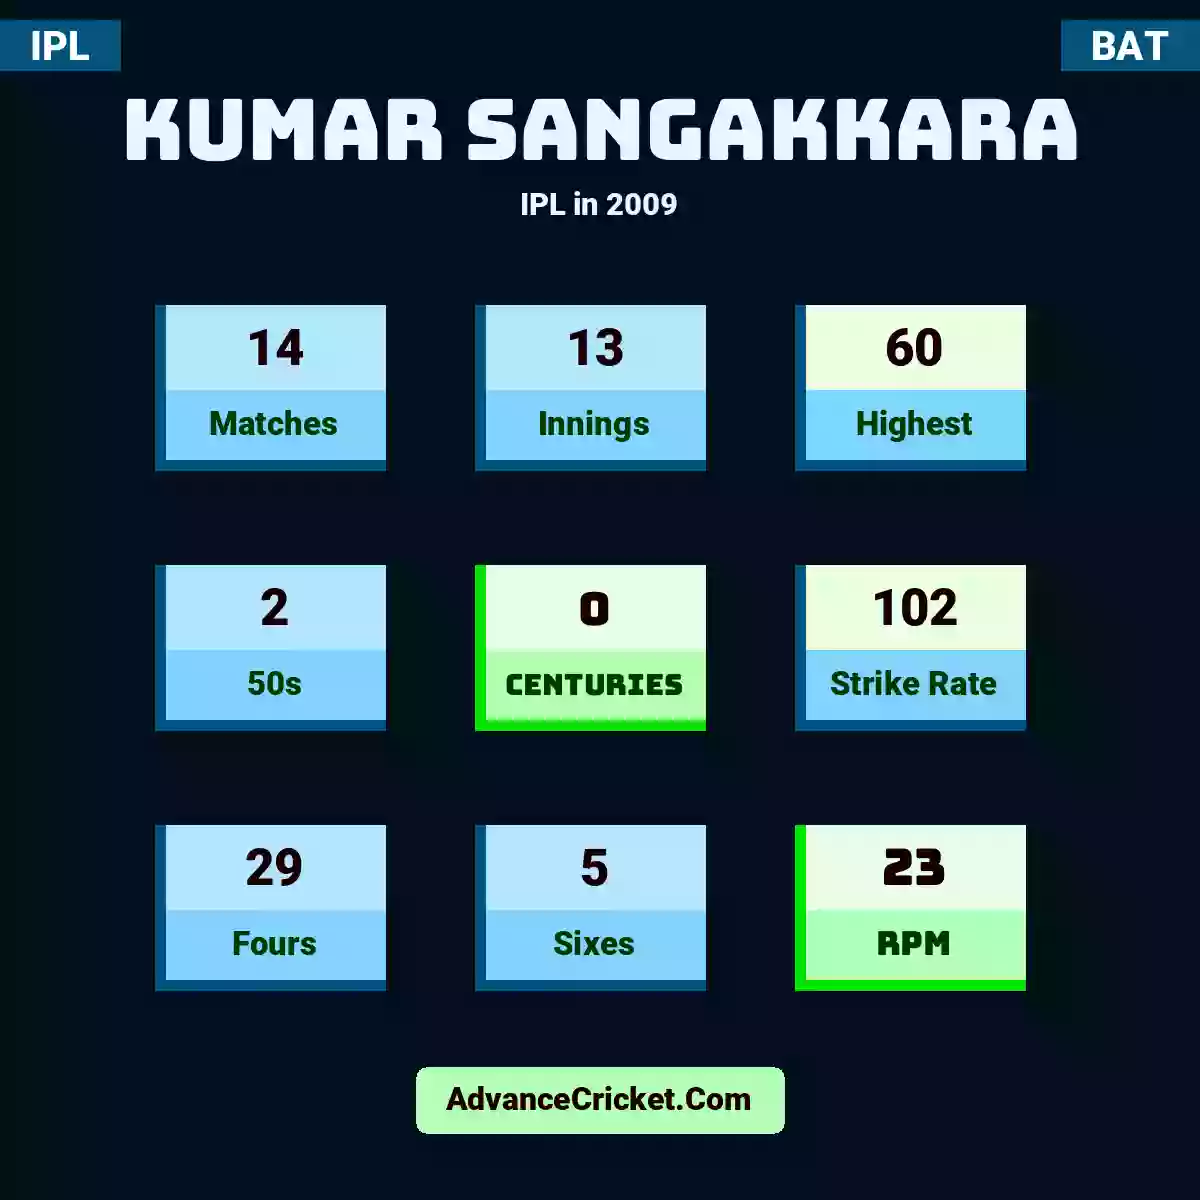 Kumar Sangakkara IPL  in 2009, Kumar Sangakkara played 14 matches, scored 60 runs as highest, 2 half-centuries, and 0 centuries, with a strike rate of 102. K.Sangakkara hit 29 fours and 5 sixes, with an RPM of 23.